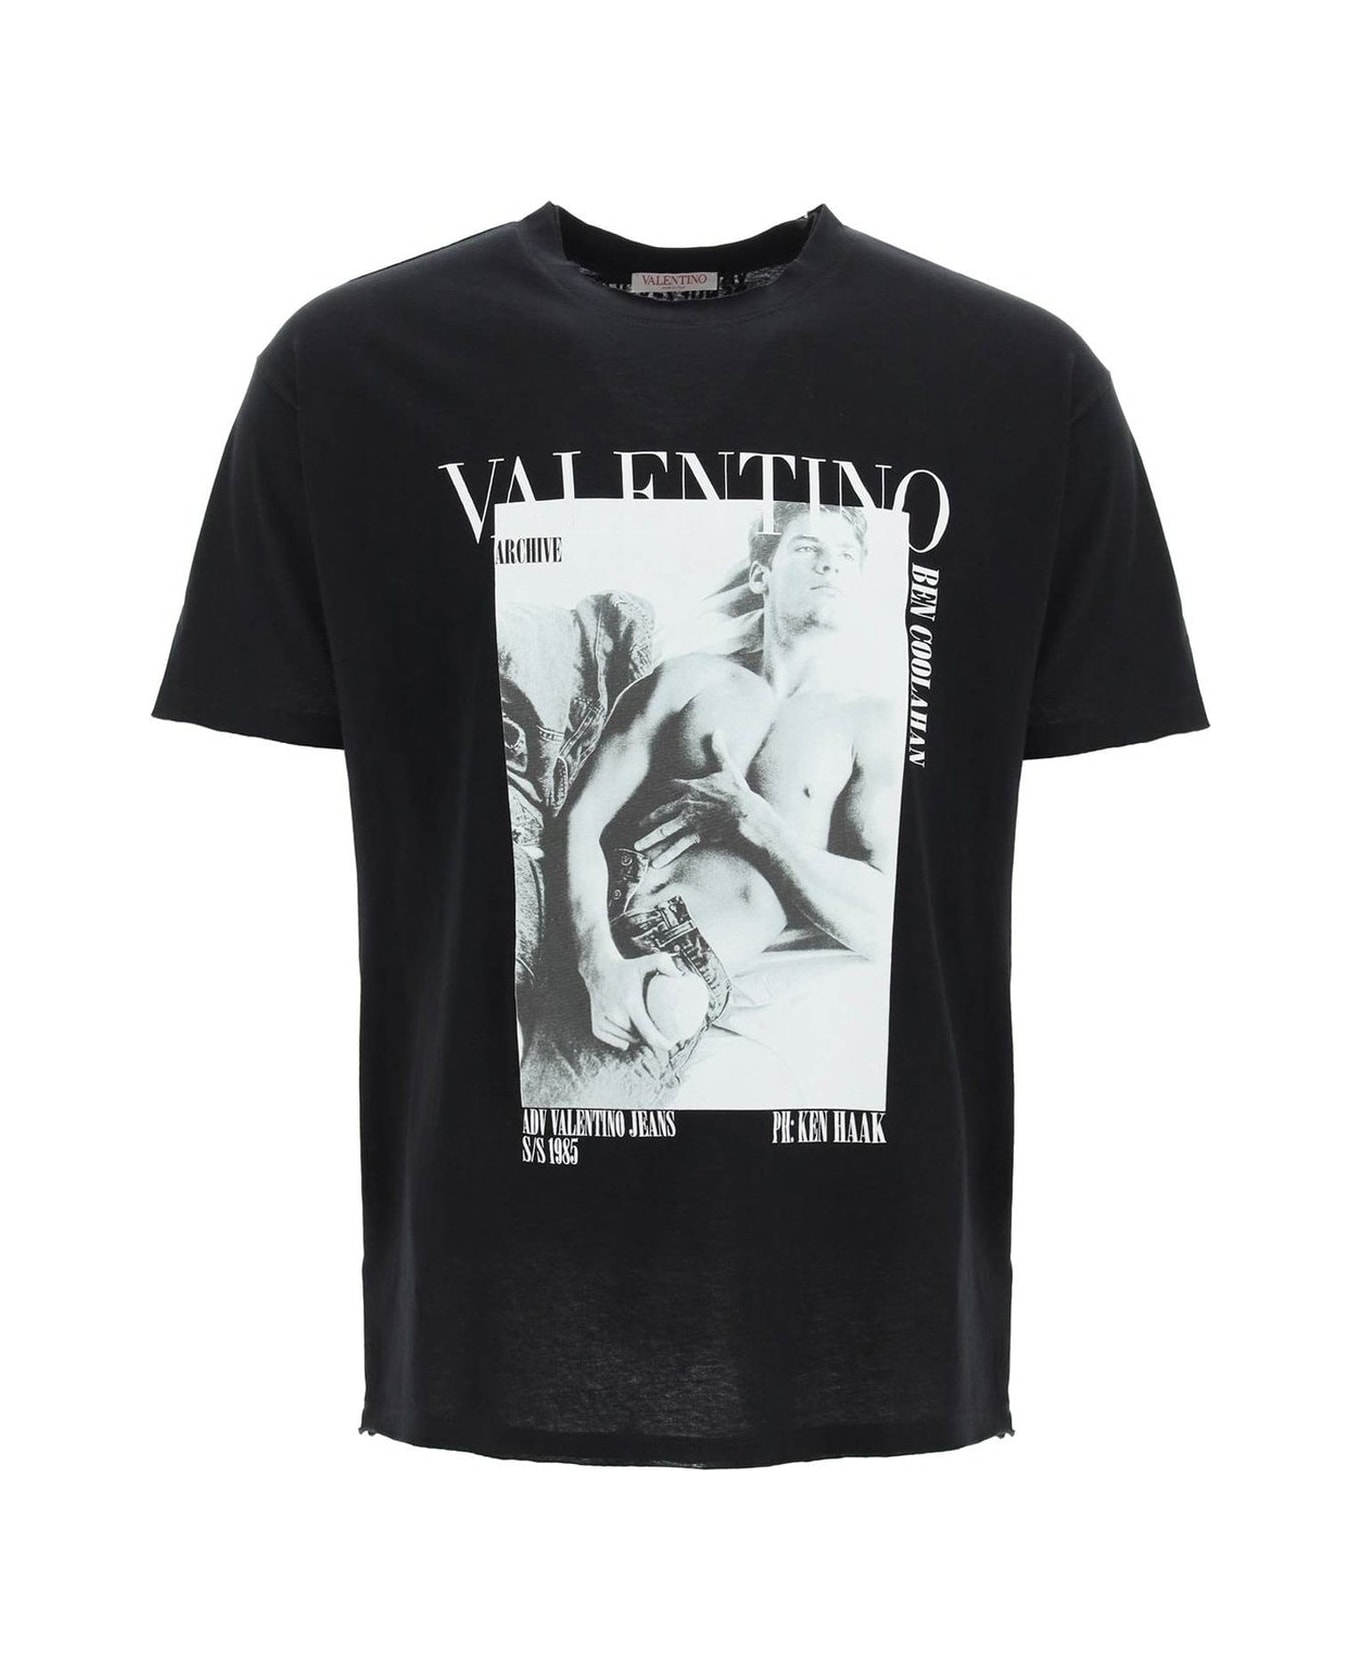 Valentino Archive Print T-shirt - Black シャツ